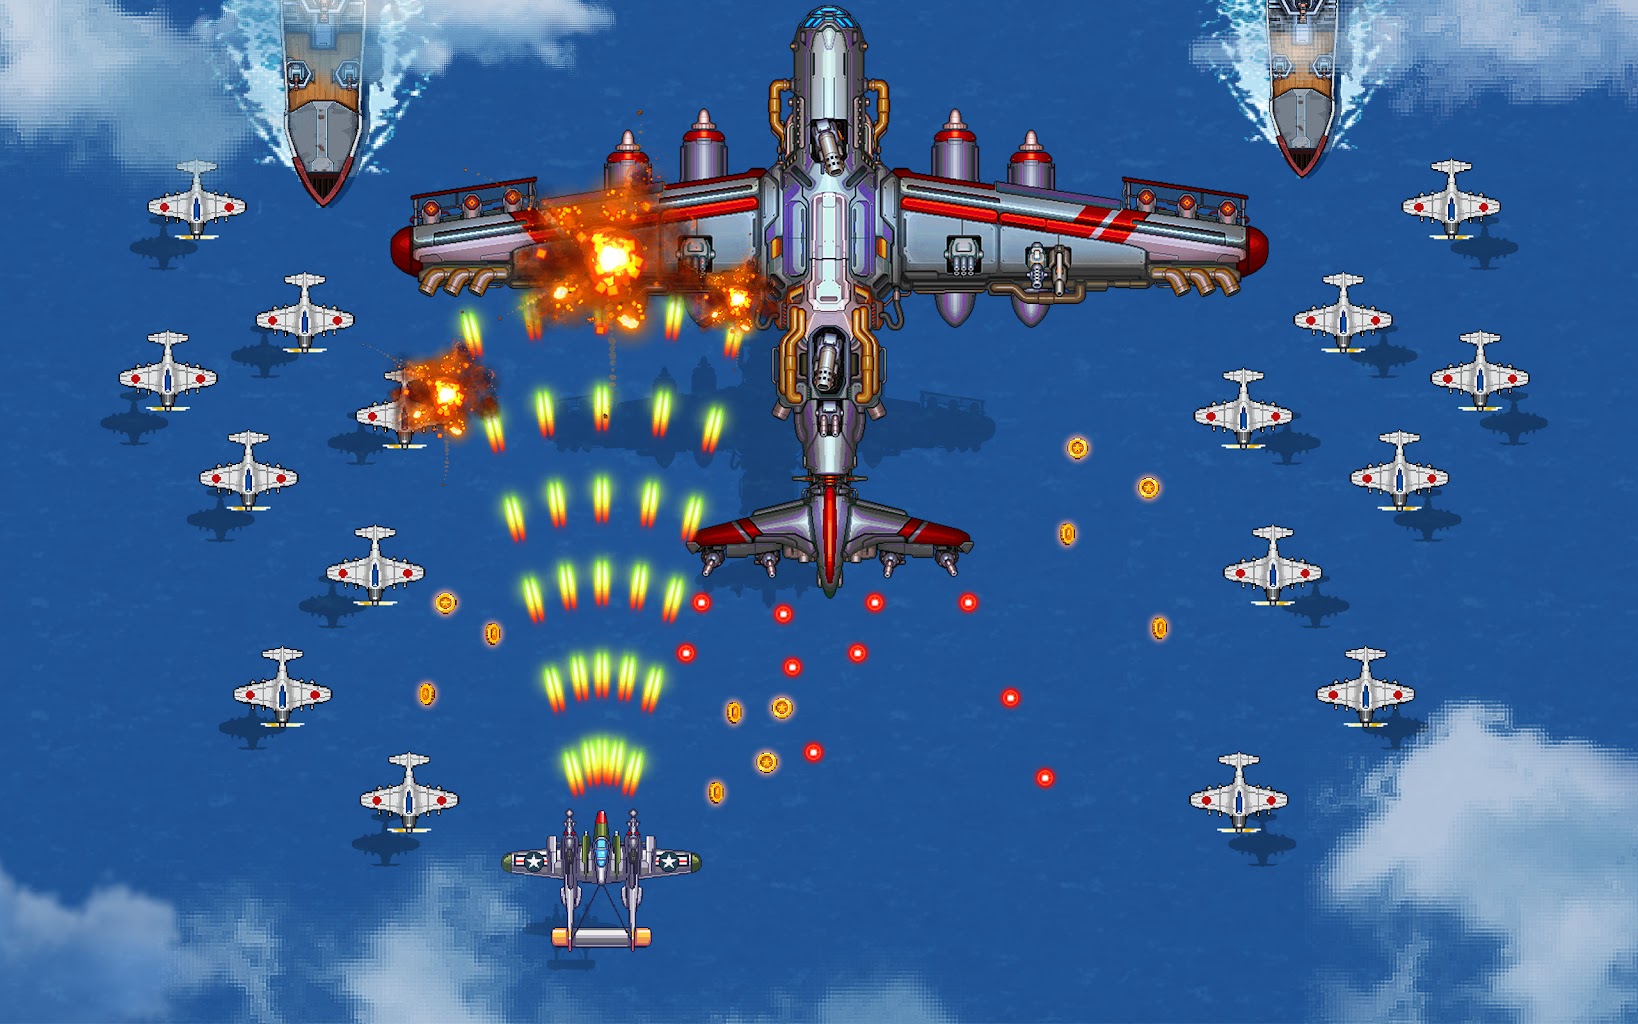 1945 Air Force: Airplane games Screenshot 22